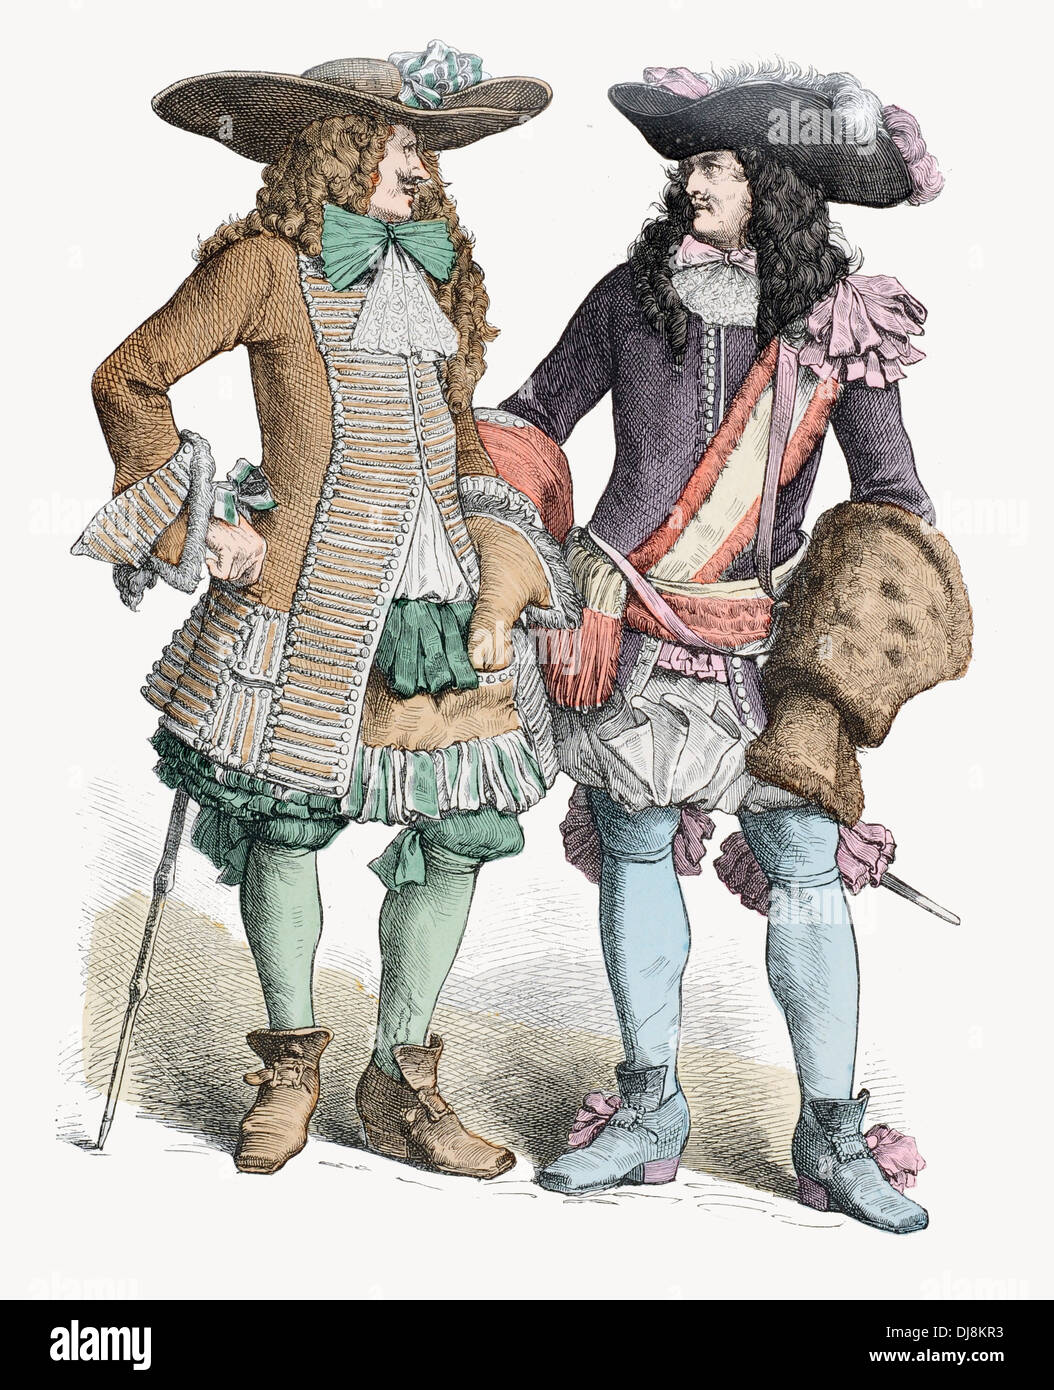 Finales del siglo XVII XVII oficial francés y noble Foto de stock